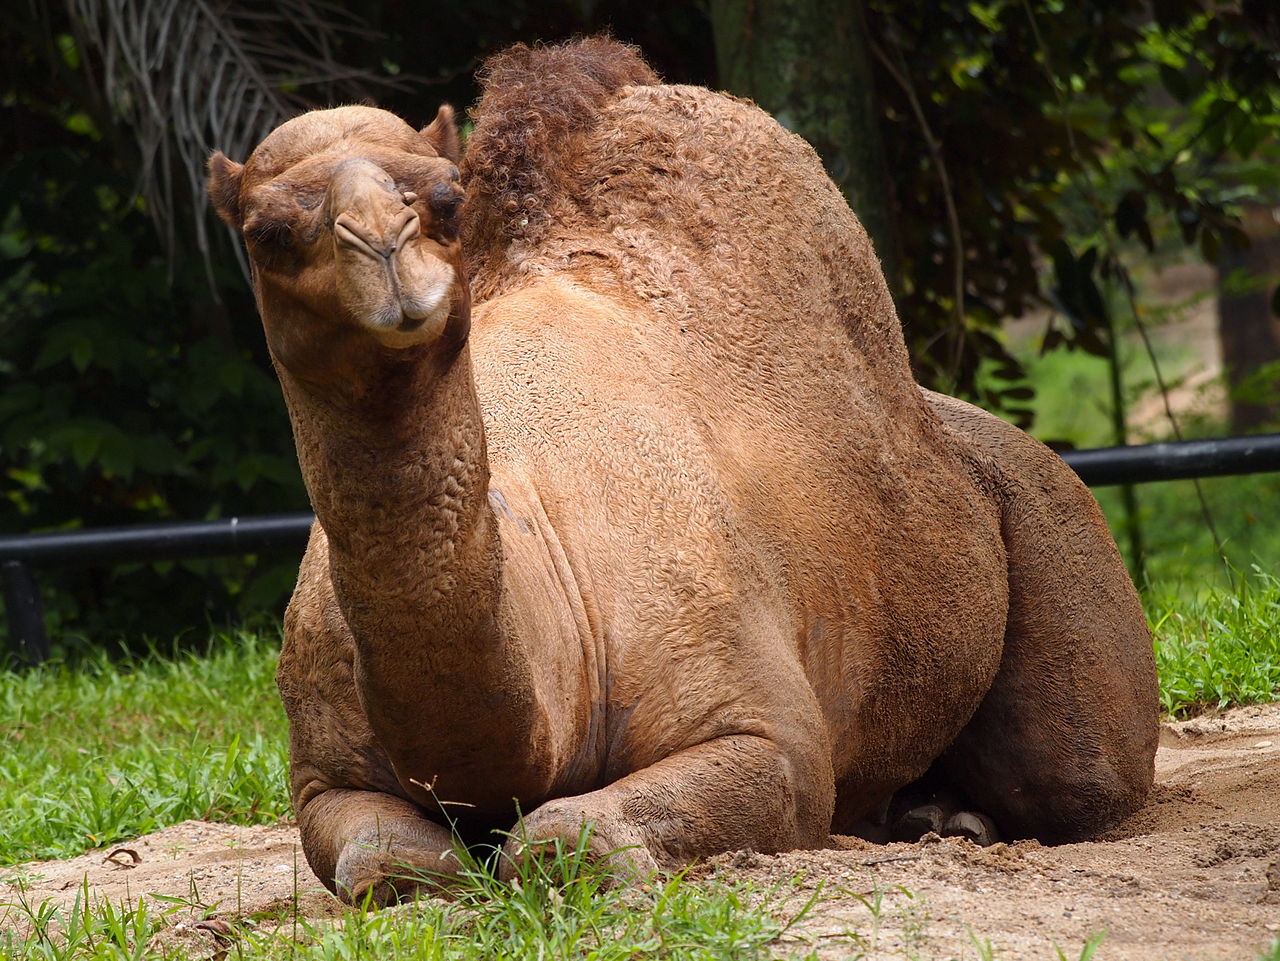 The camel at Zoo Negara